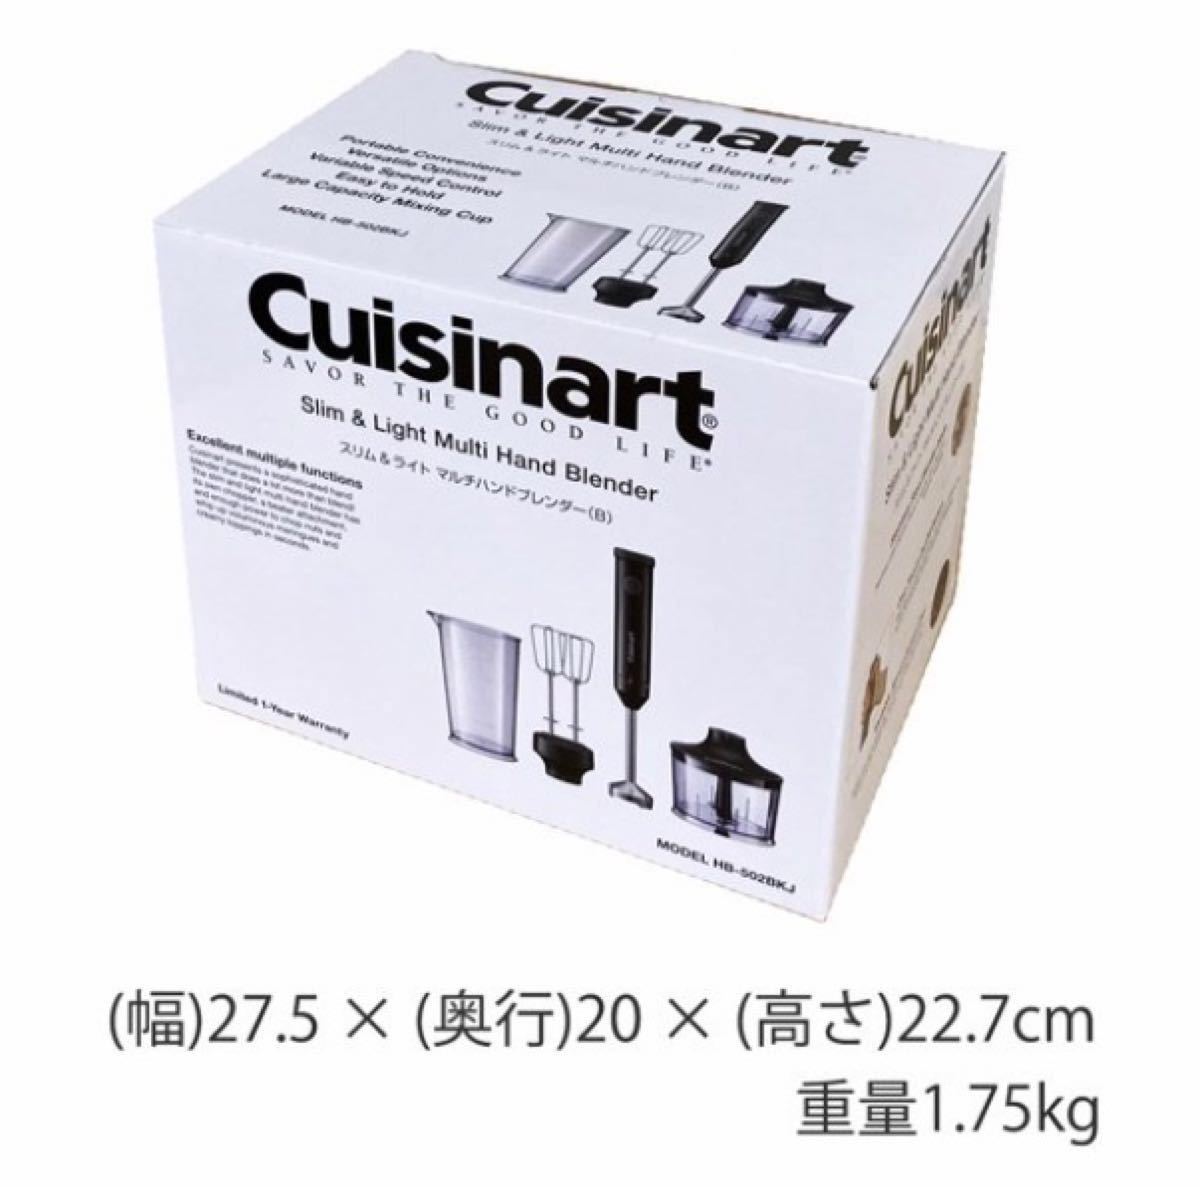 【新品】クイジナート HB-502WJ Cuisinart ハンドブレンダー ミキサー フードプロセッサー 白 ホワイト